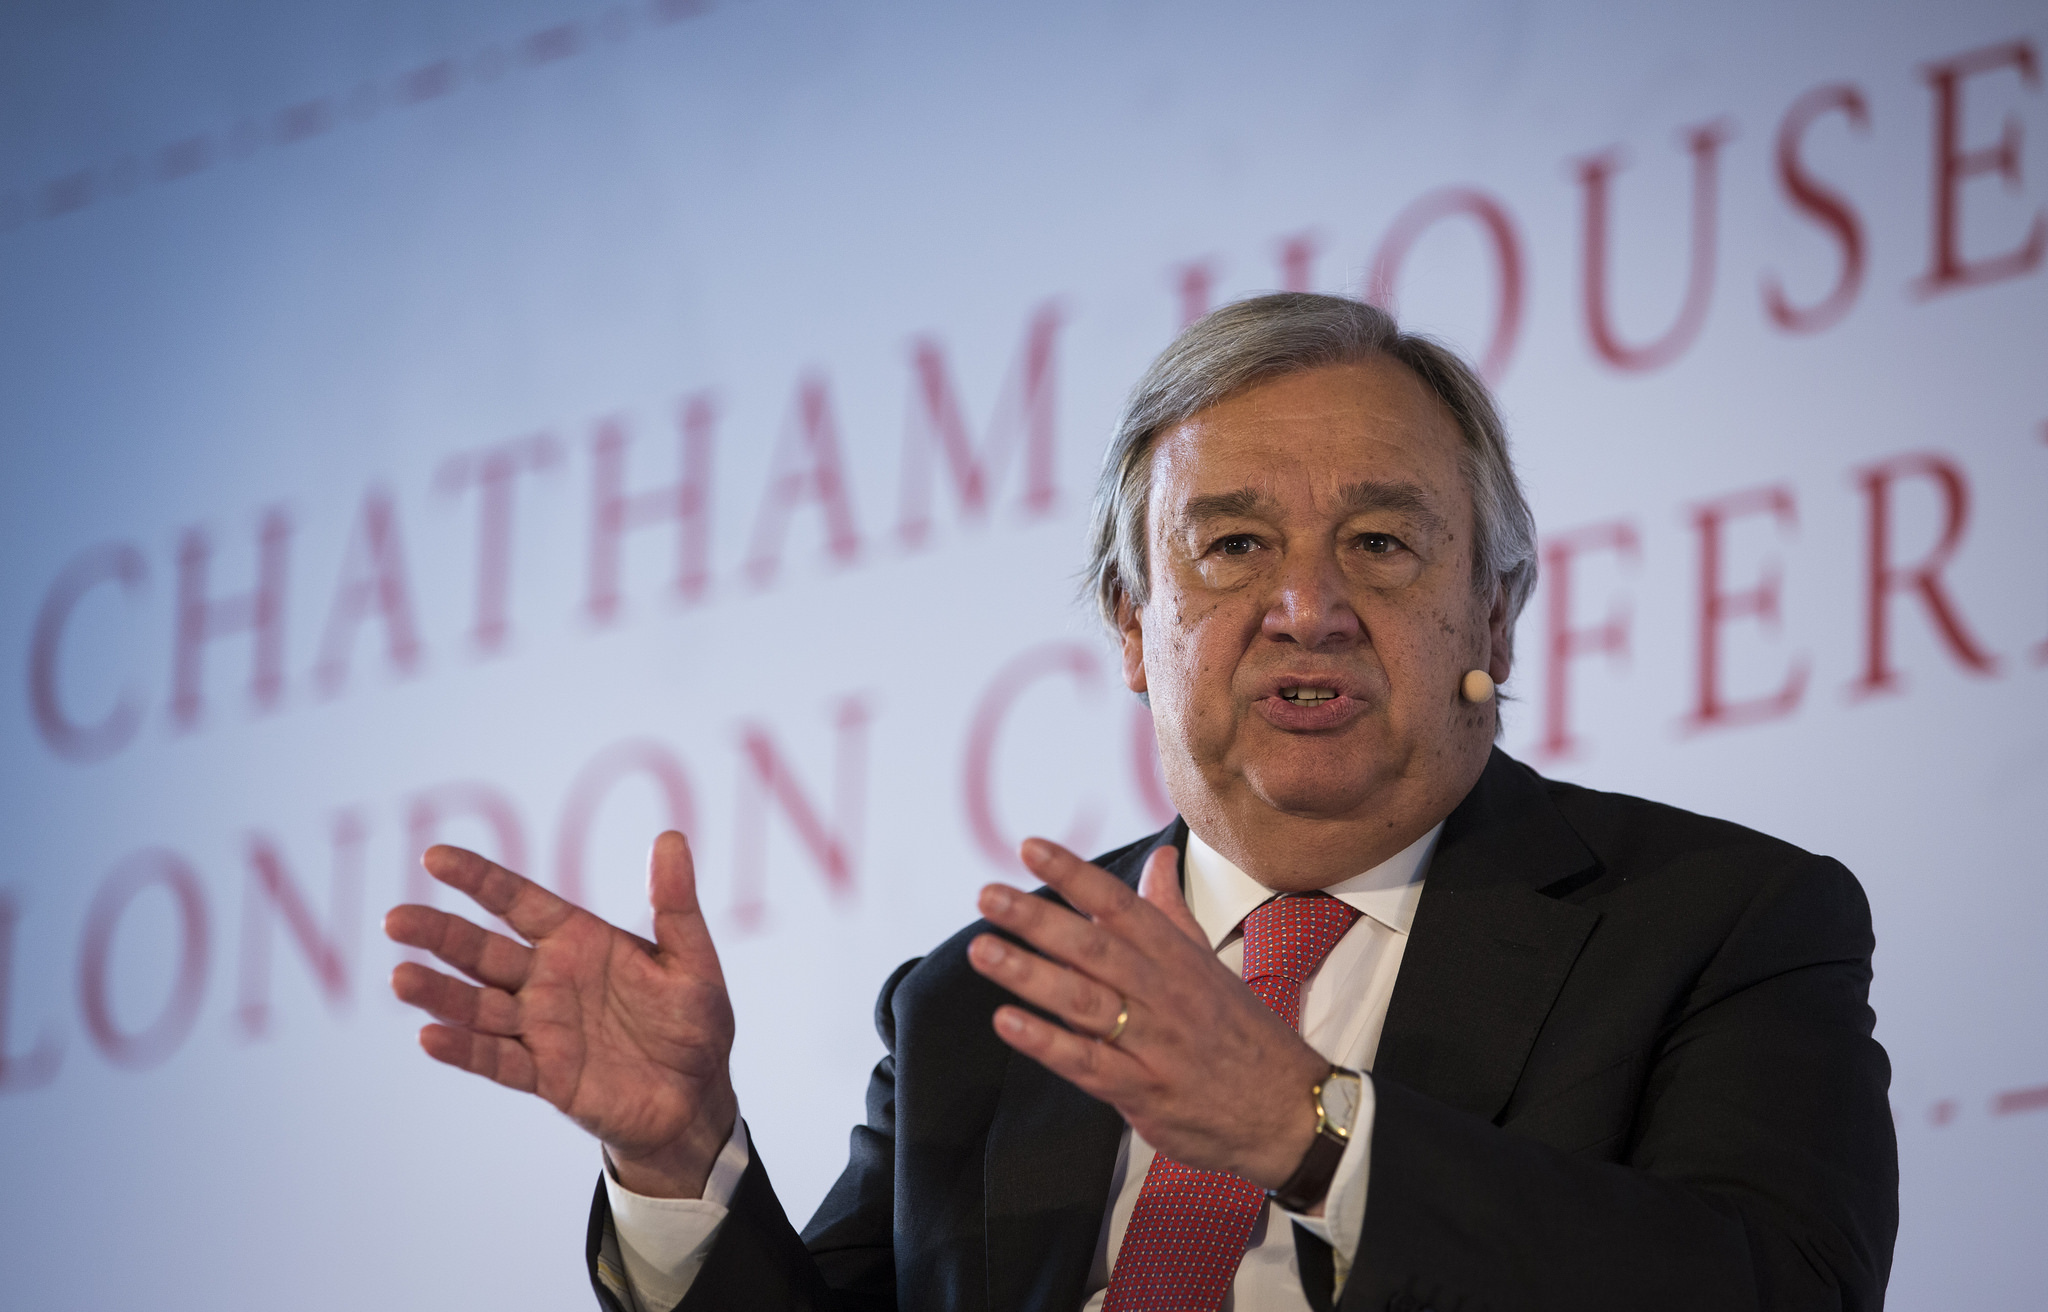 10 Facts About Un Secretary General Antonio Guterres